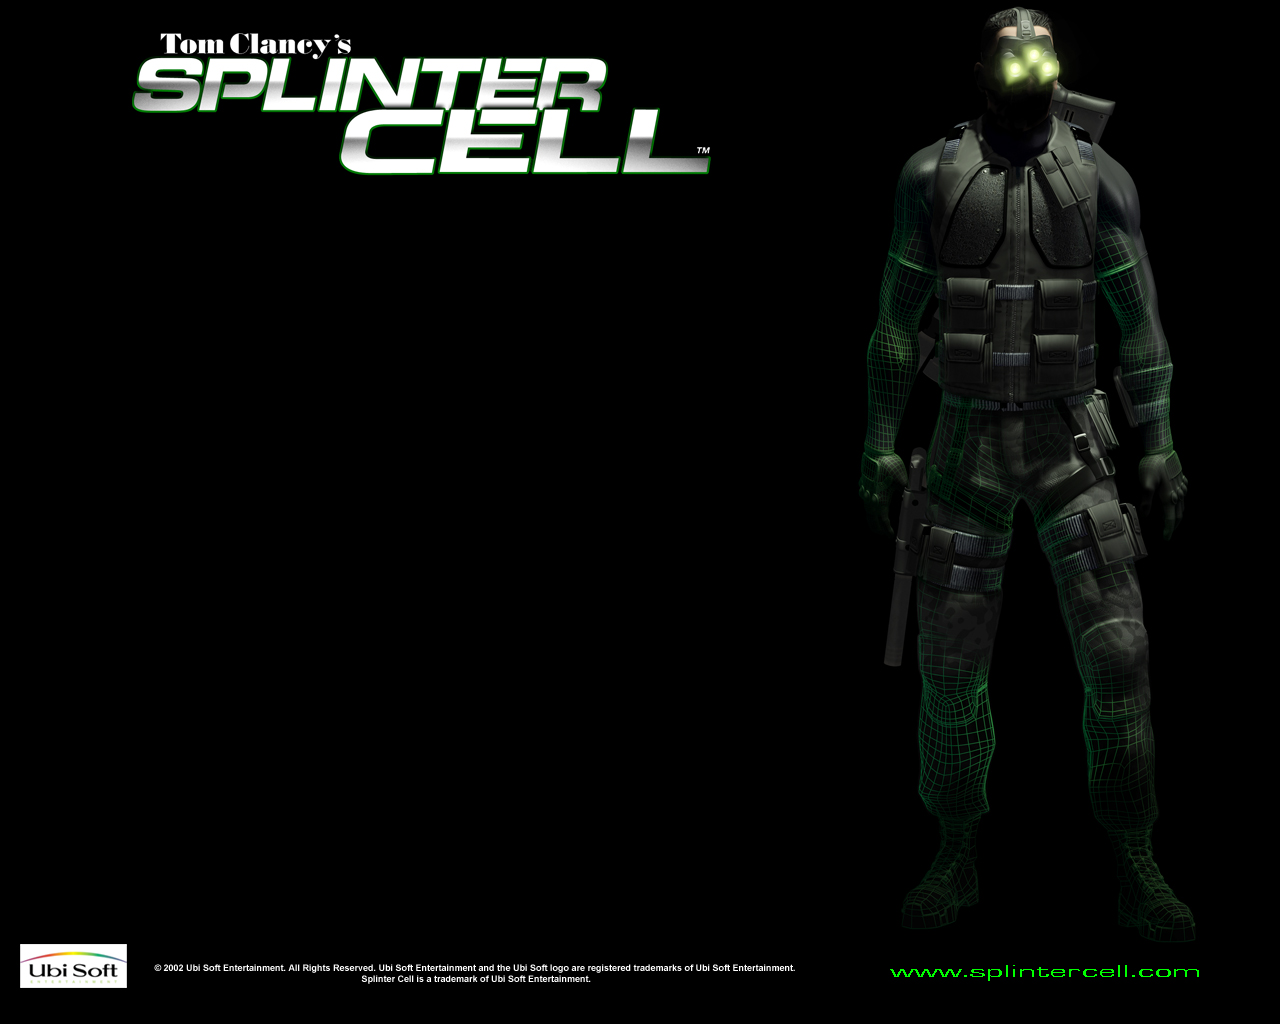 Сплинтер селл 1. Сэм Фишер Splinter Cell 1. Сэм Фишер 2002. Сэм Фишер Splinter Cell Chaos Theory. Сплинтер селл 2002.